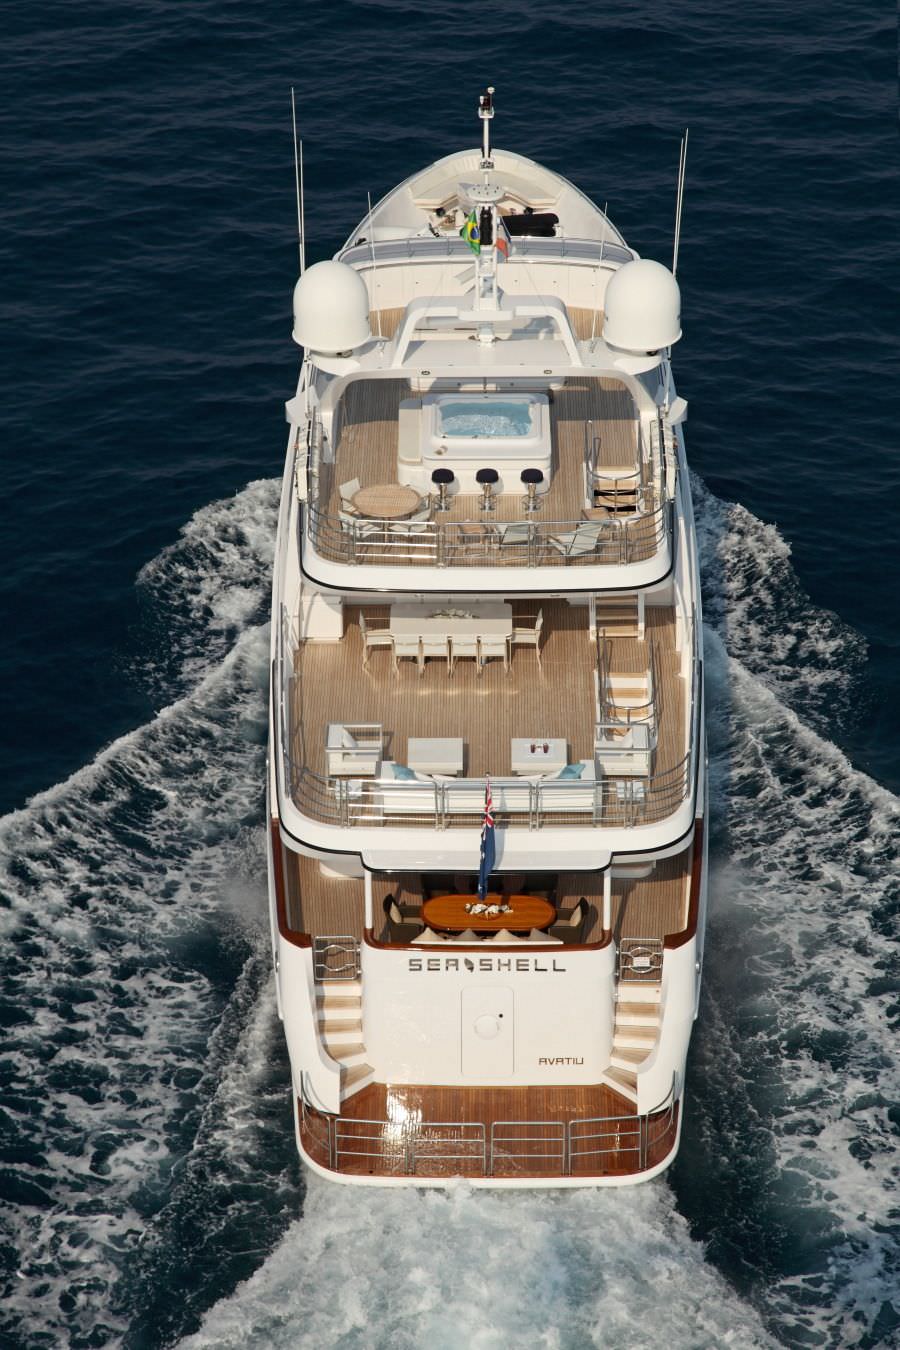 SEA SHELL - Yacht Charter Cannes & Boat hire in Fr. Riviera & Tyrrhenian Sea 4